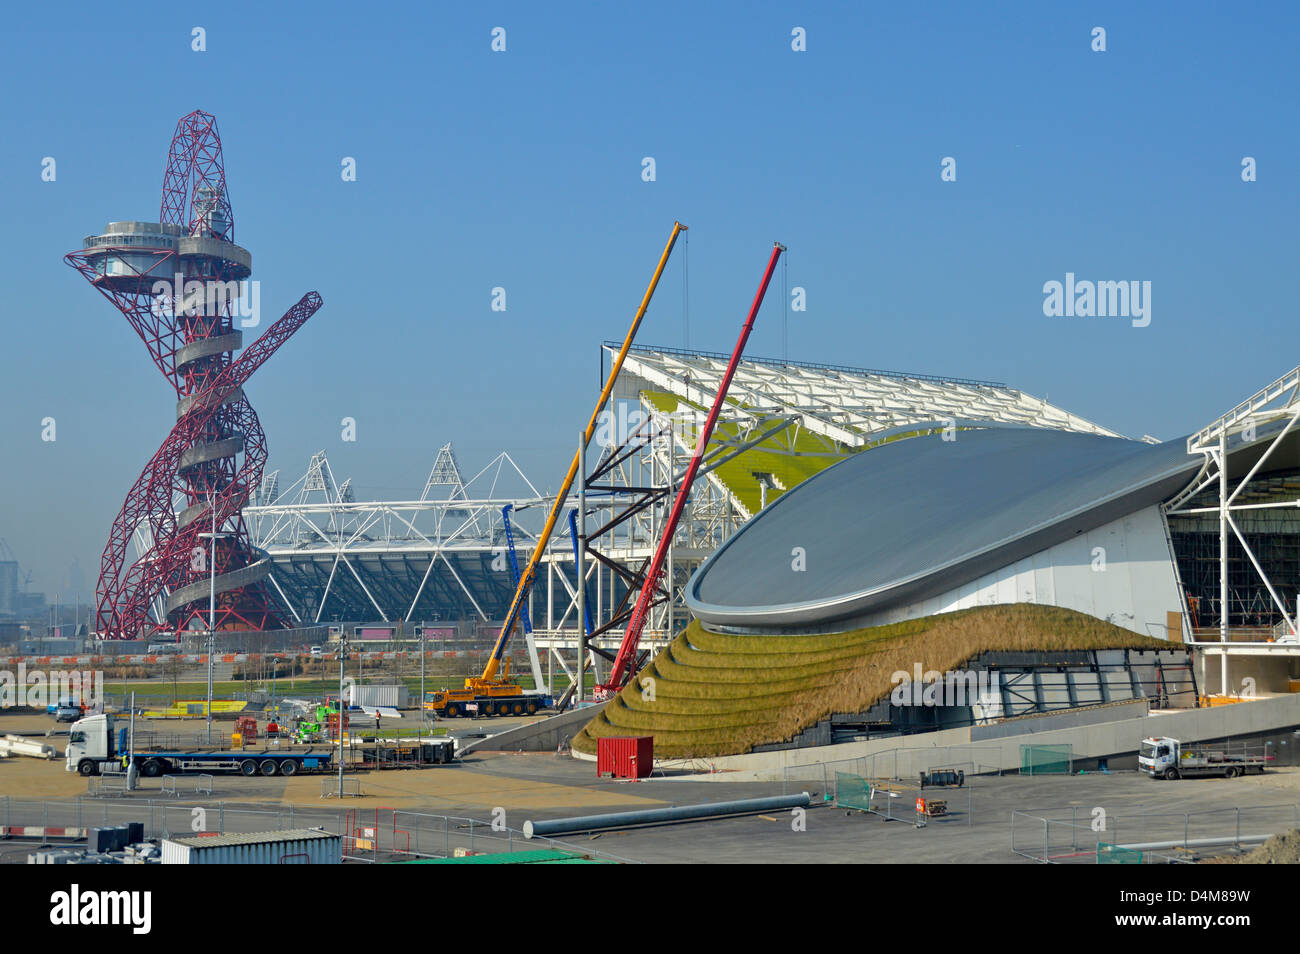 2012 Londra Olympic Park ad alterazioni del centro acquatico dopo gli eventi olimpici con orbita tower e stadio principale al di là Foto Stock